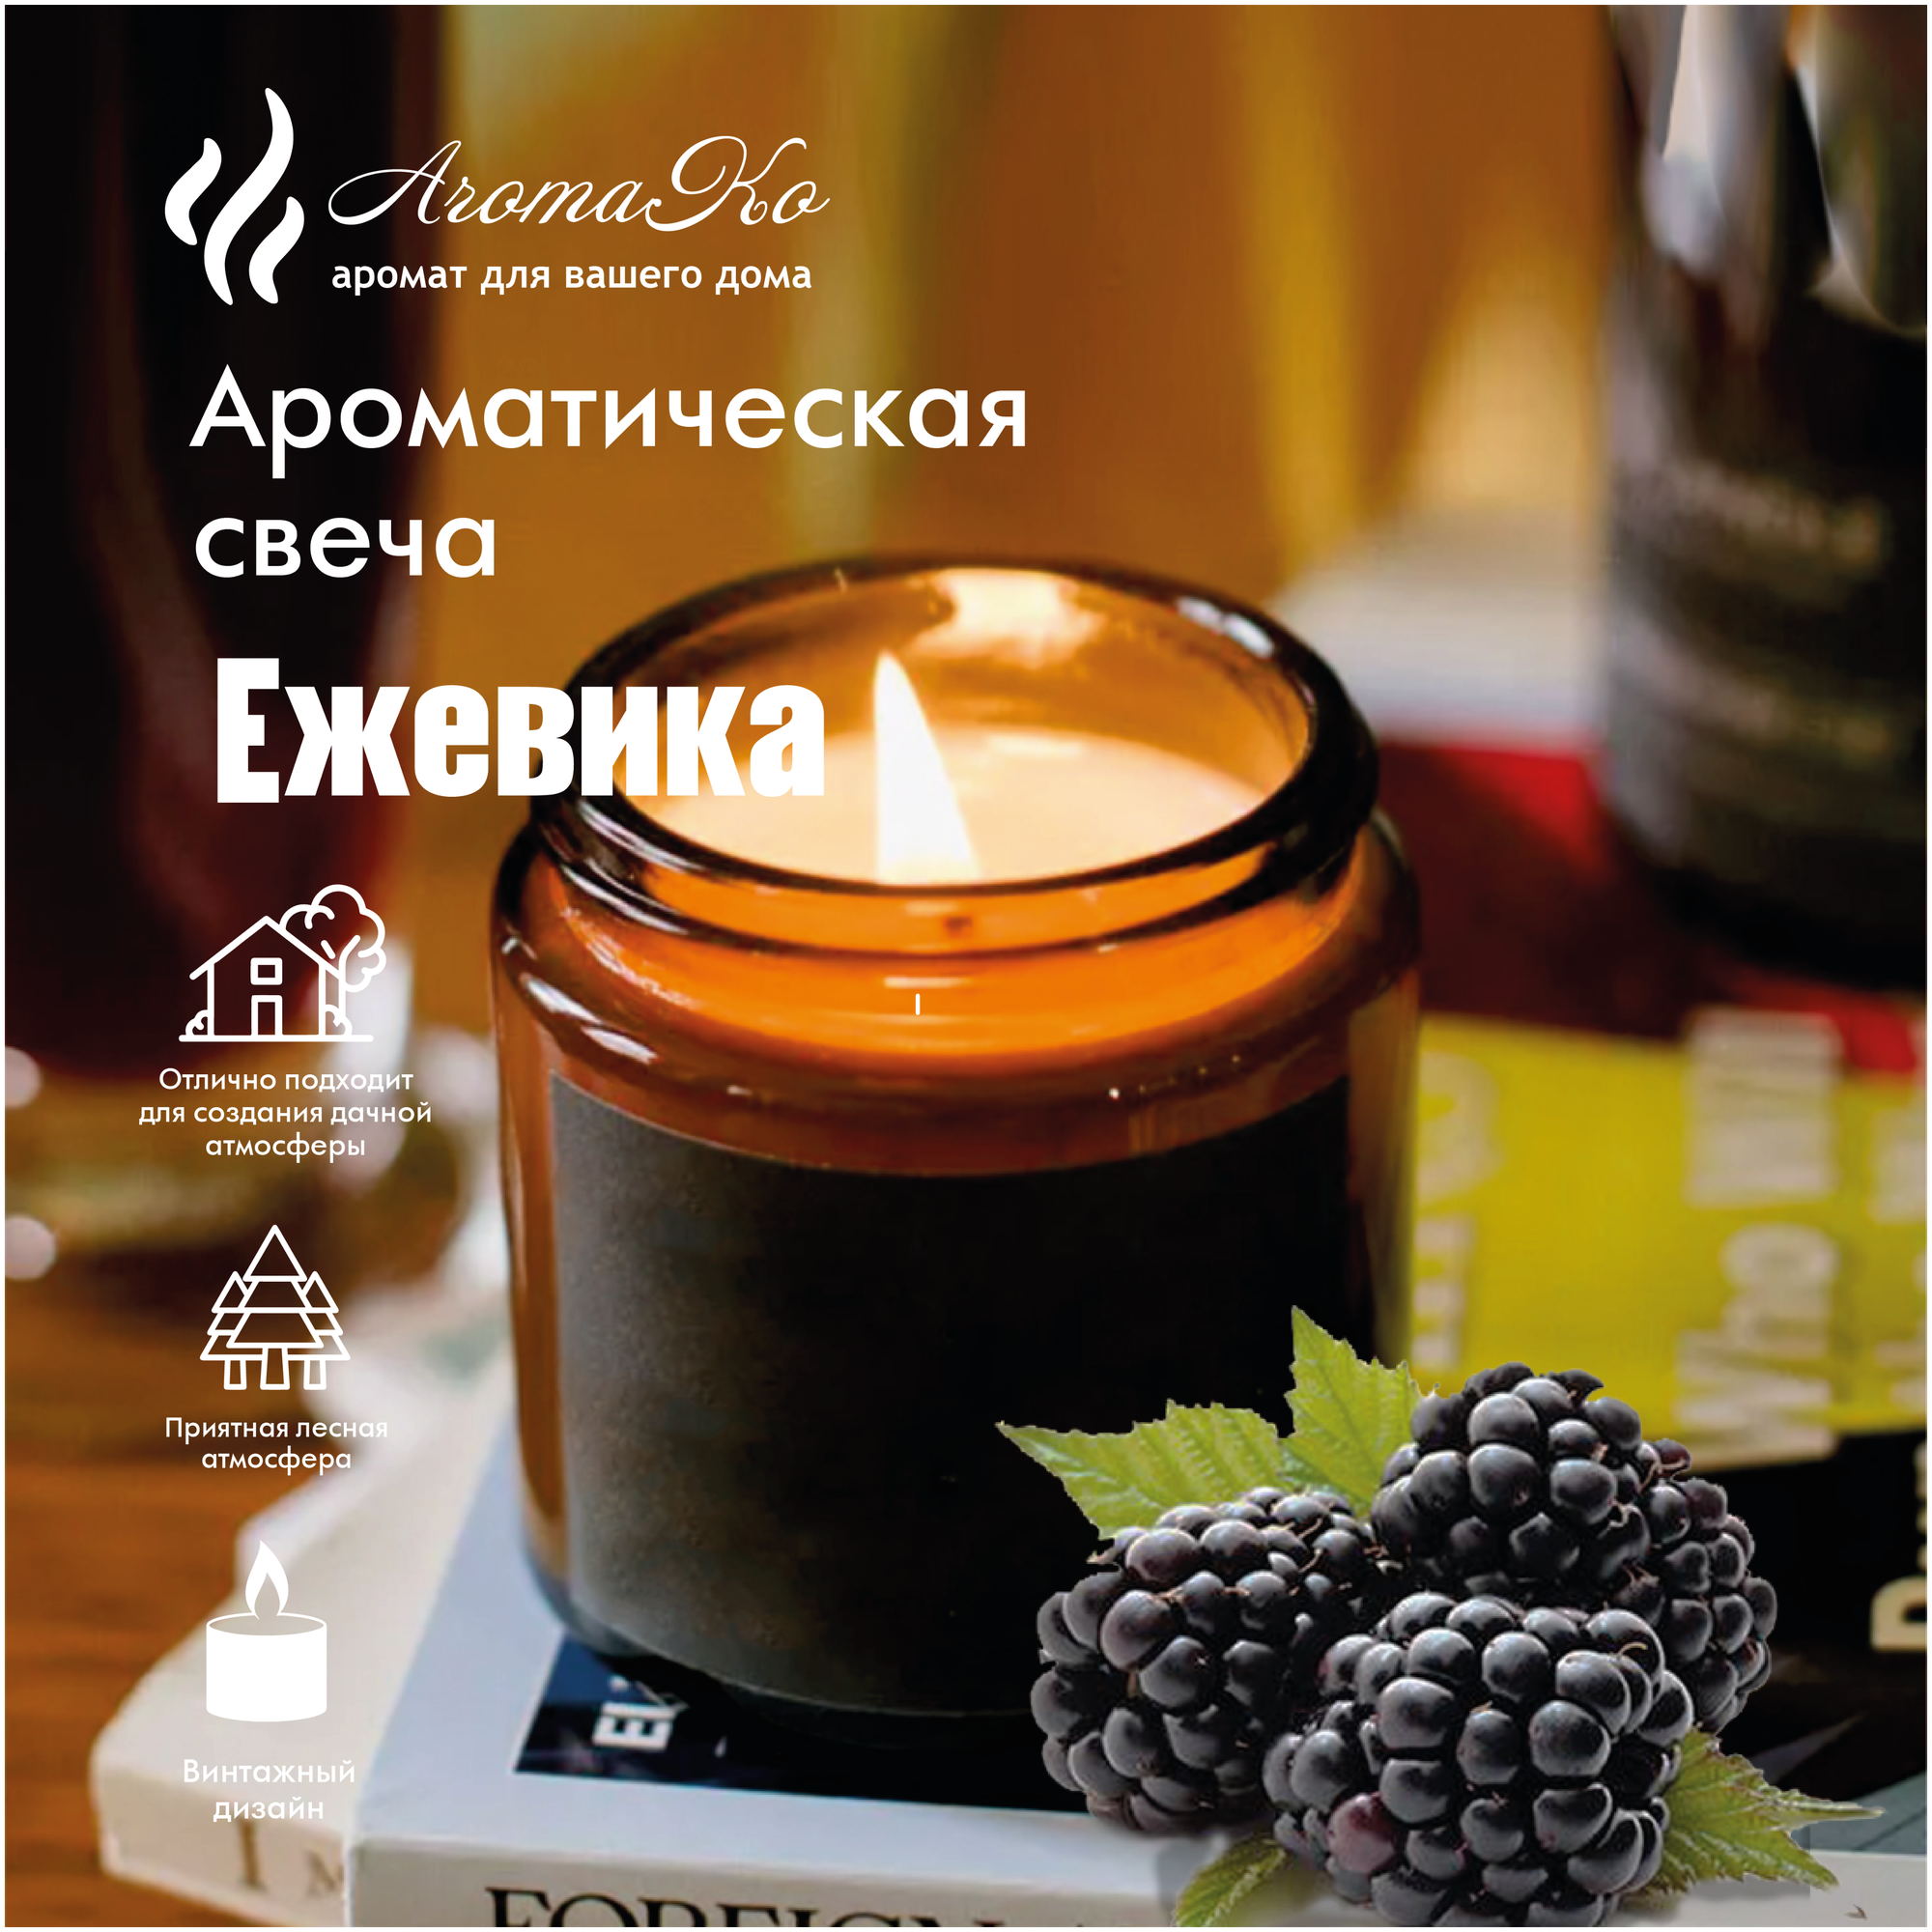 Ароматическая свеча Ежевика AROMAKO 200 гр/аромасвеча из натурального воска в стеклянной банке с деревянным фитилём 60 часов горения